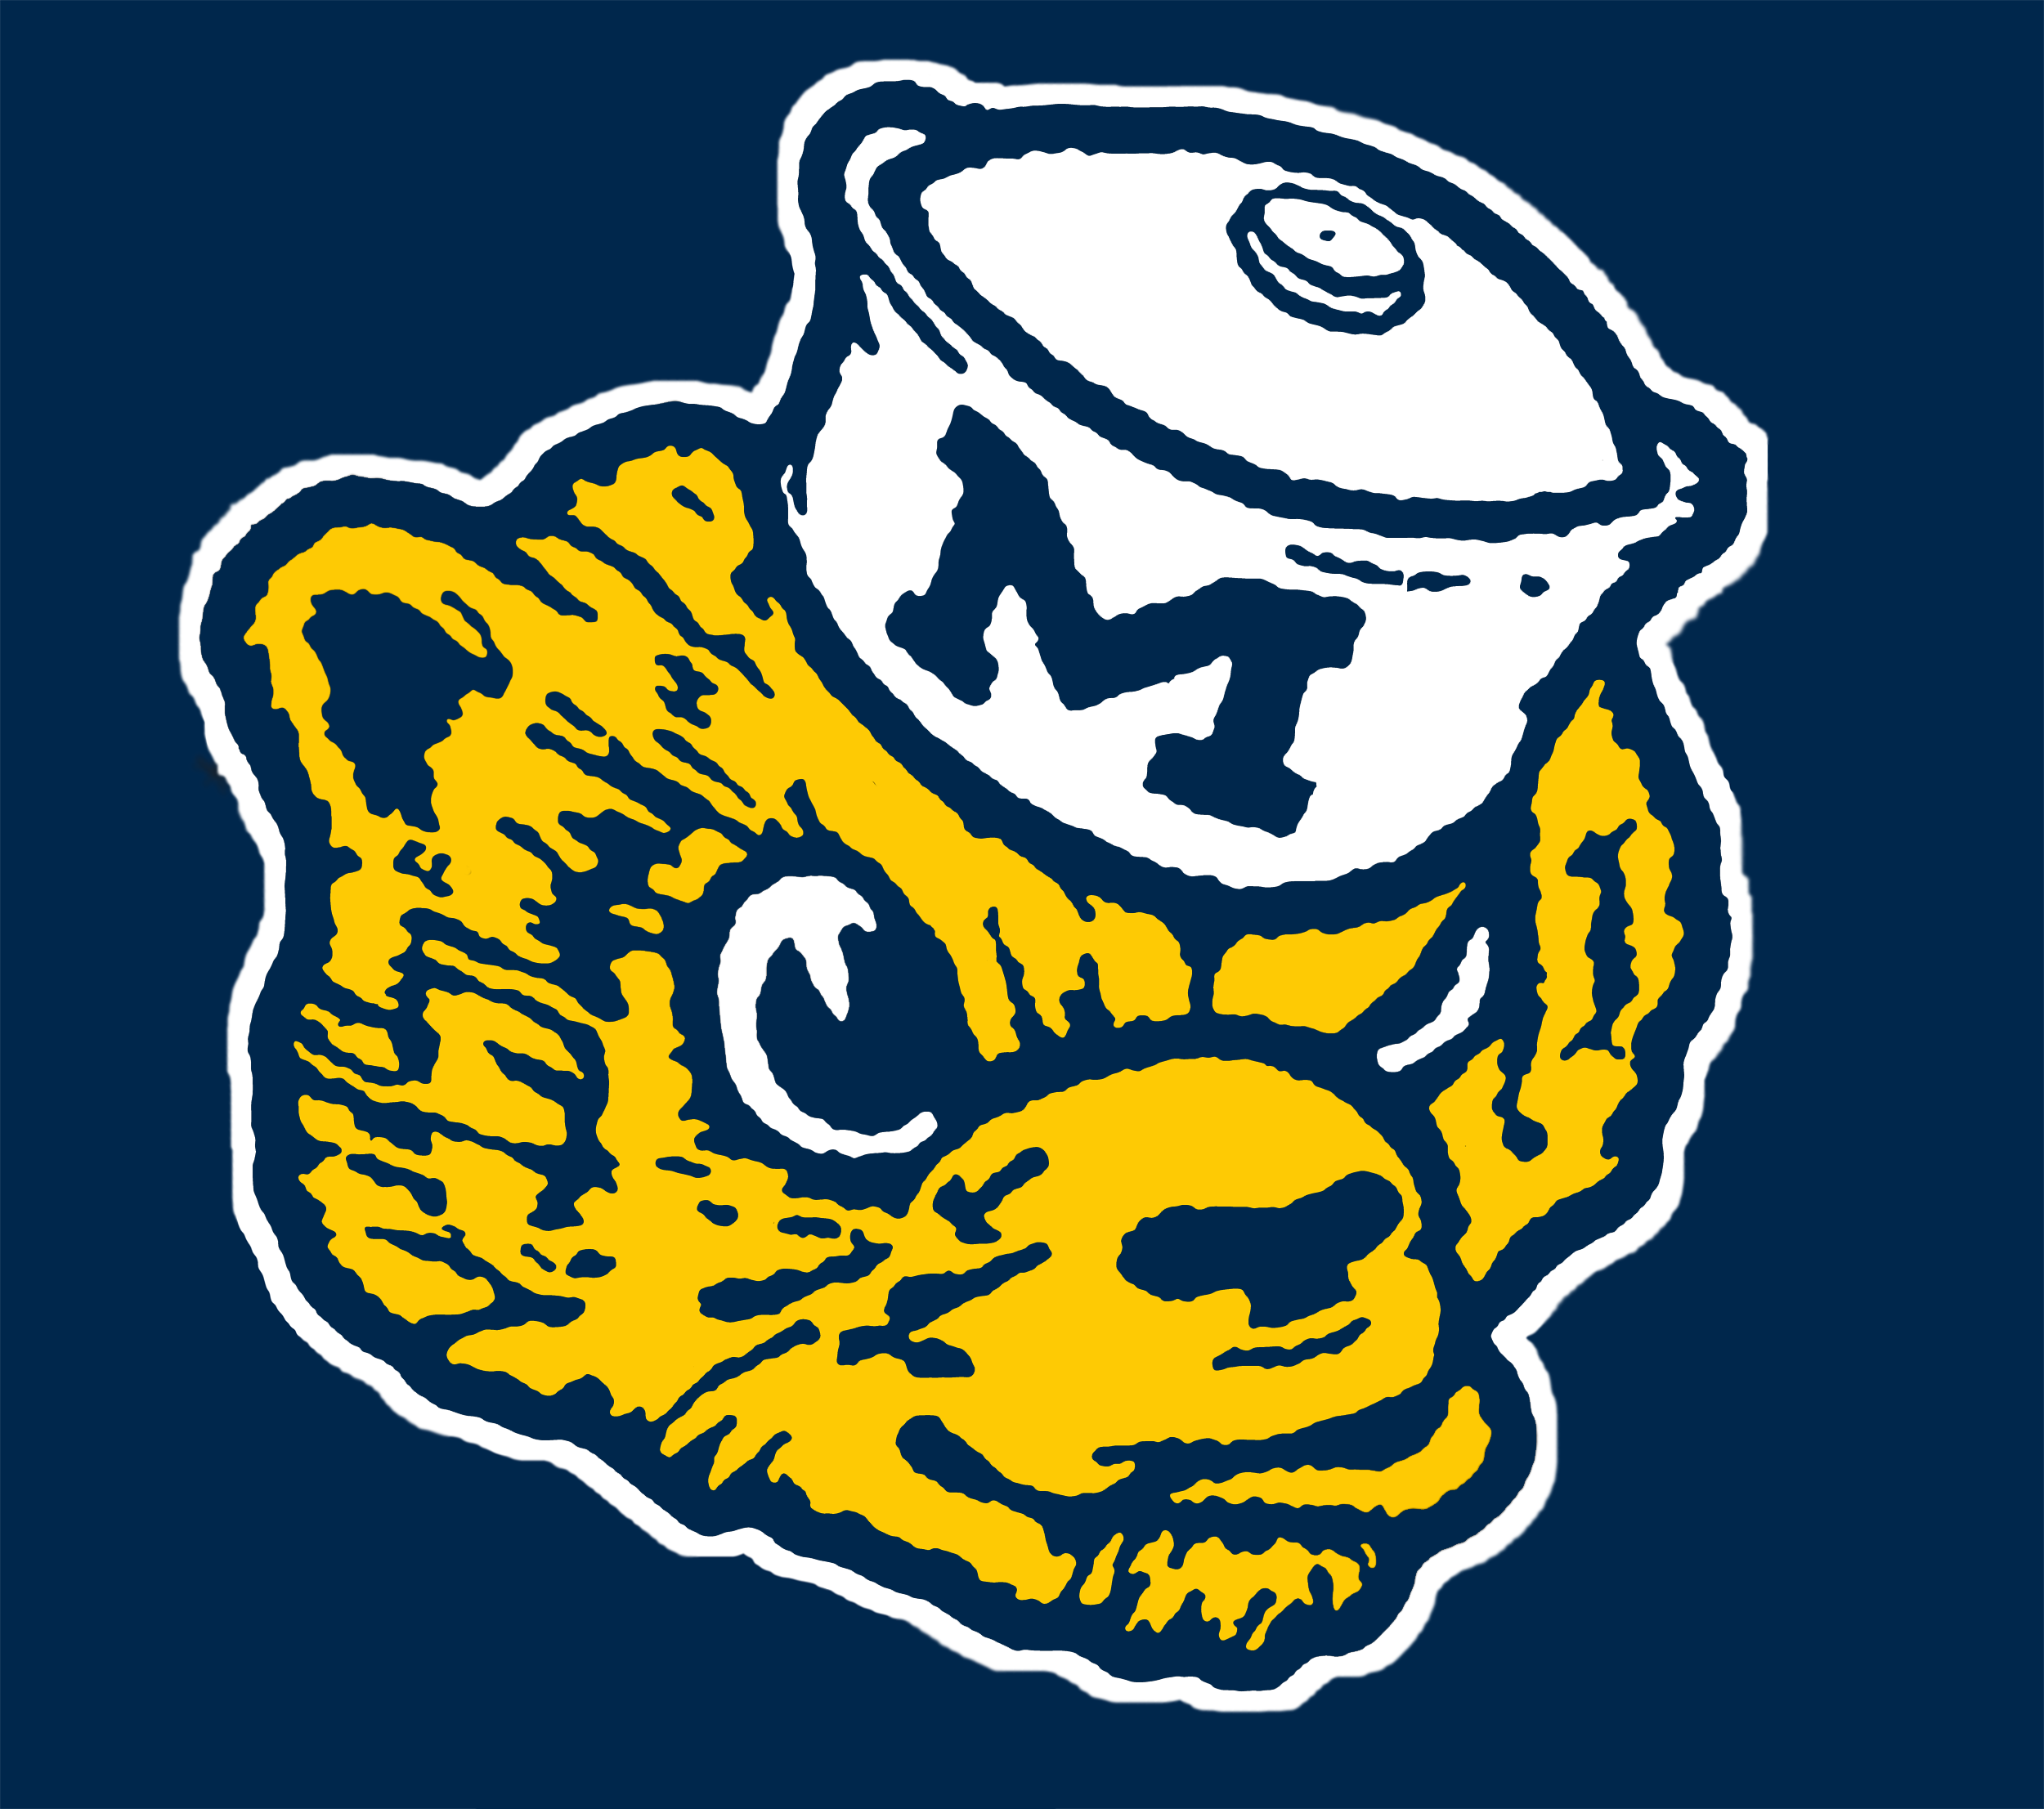 Url Mgo Mgoboard Vintage Michigan Wolverine Logo